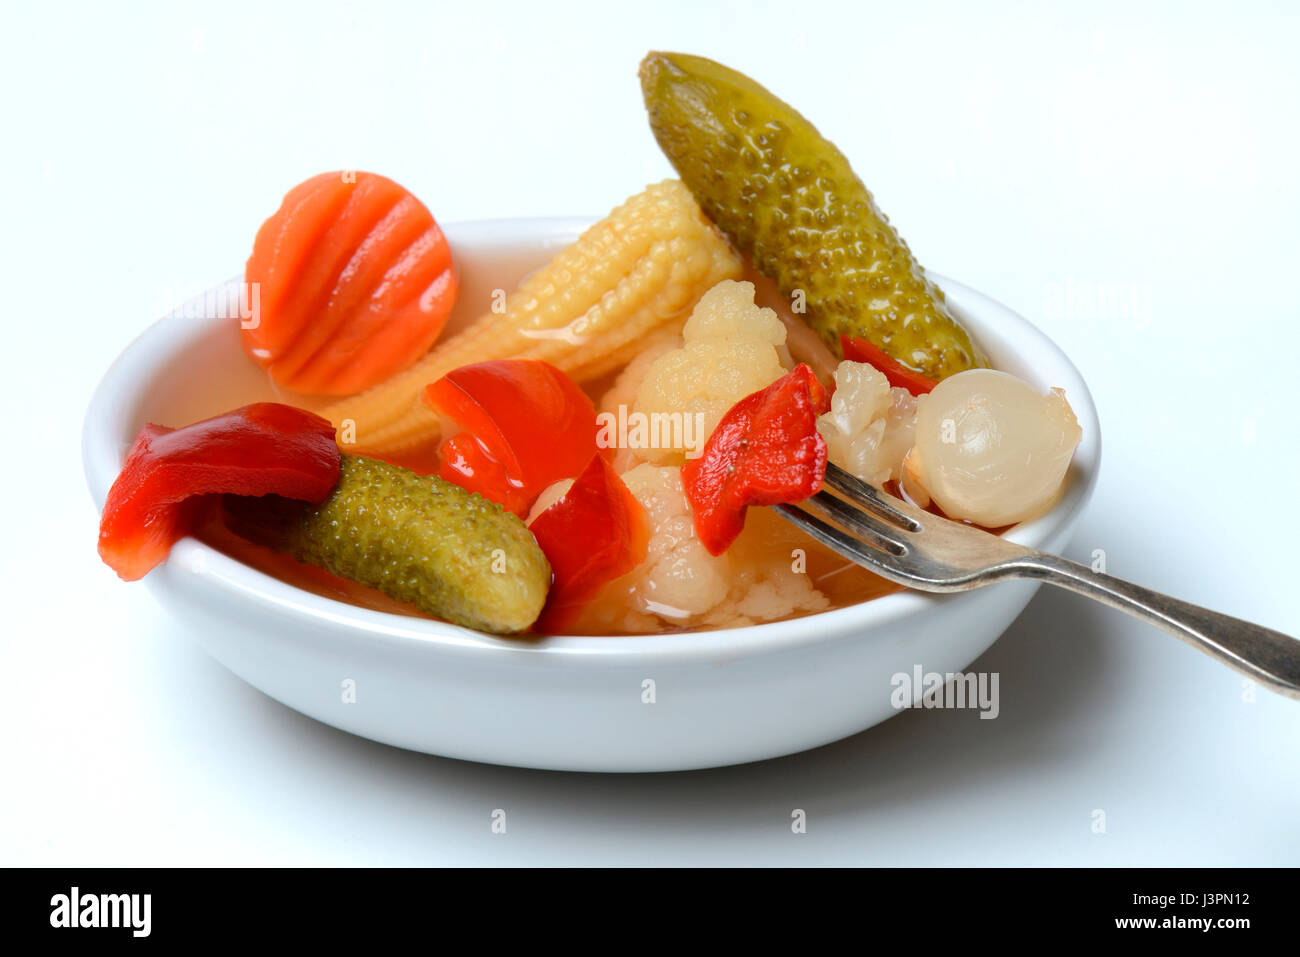 Mixed pickles mit Moehren, Blumenkohl, Gurken, Zwiebeln und Maiskoelbchen in einer Schale mit Gabel, eingelegte, eingelegt Stock Photo